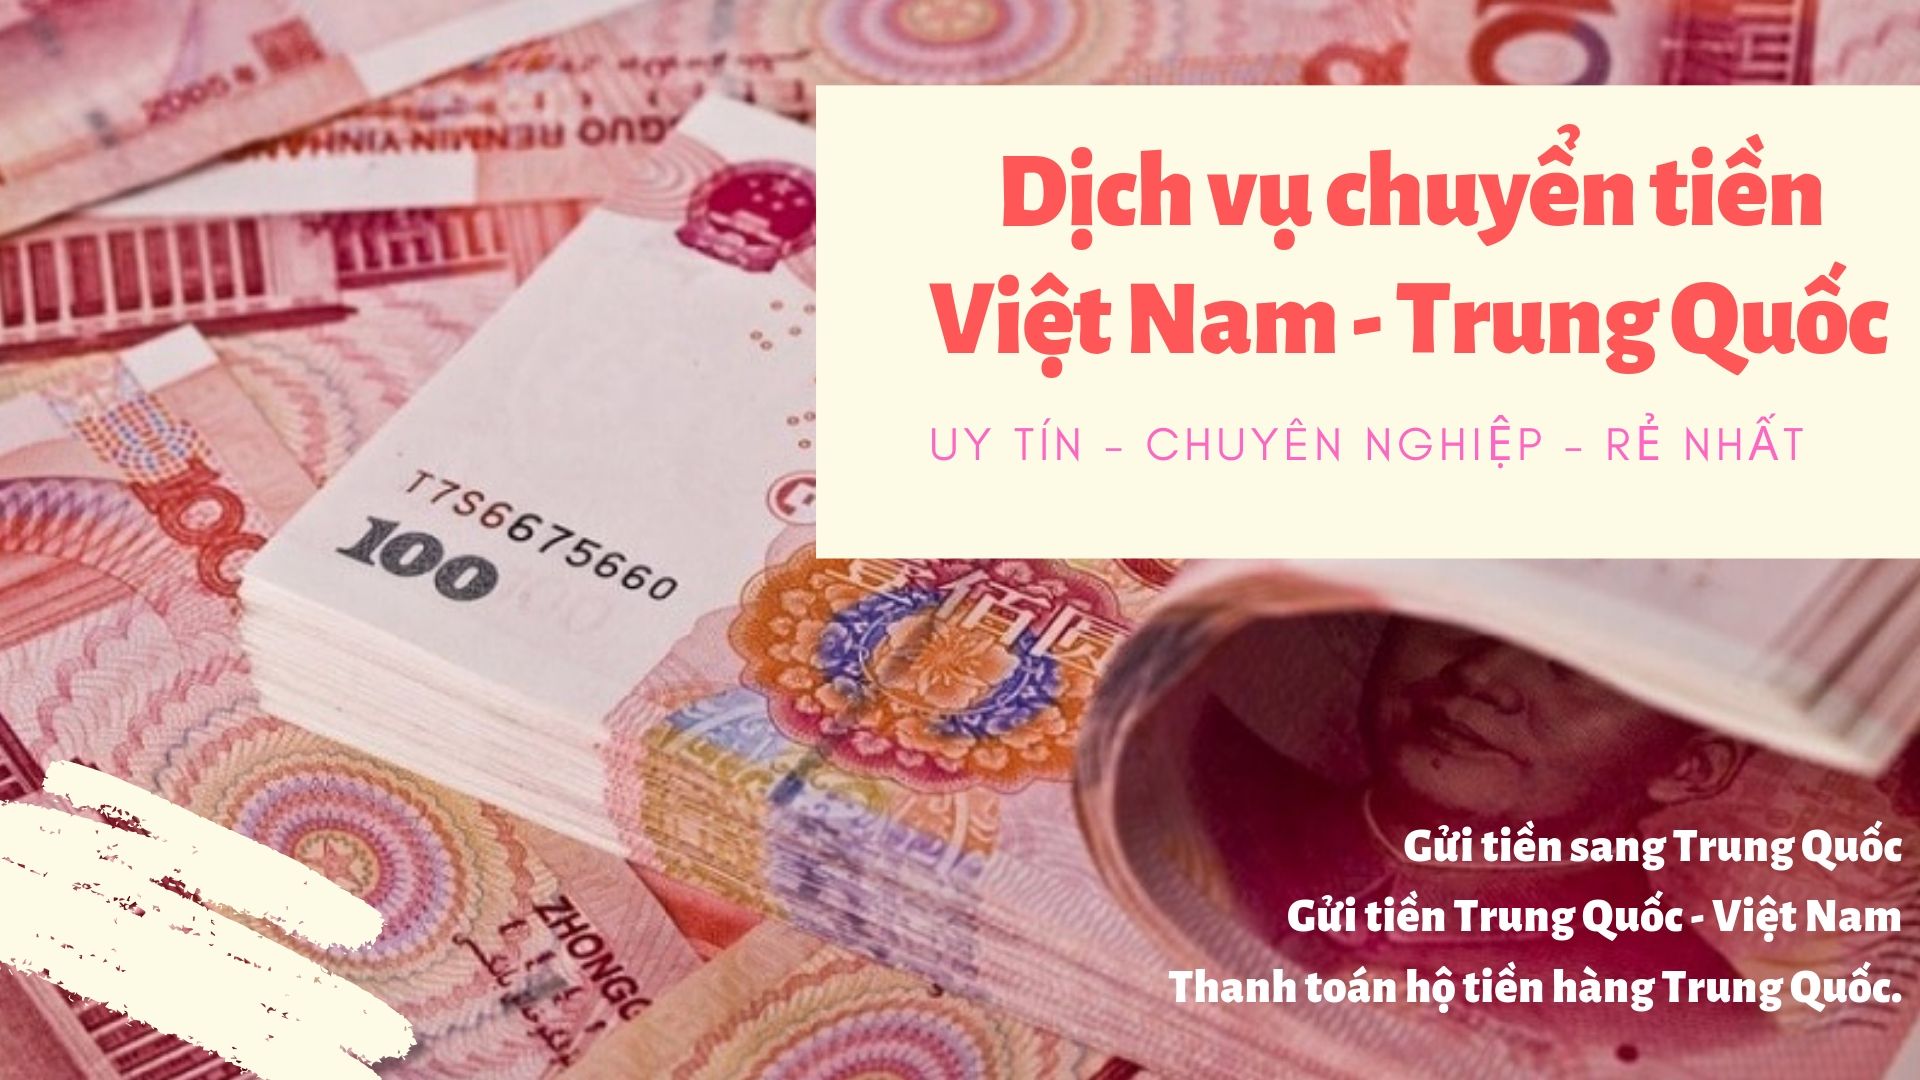 Dịch vụ chuyển tiền Việt Nam - Trung Quốc 